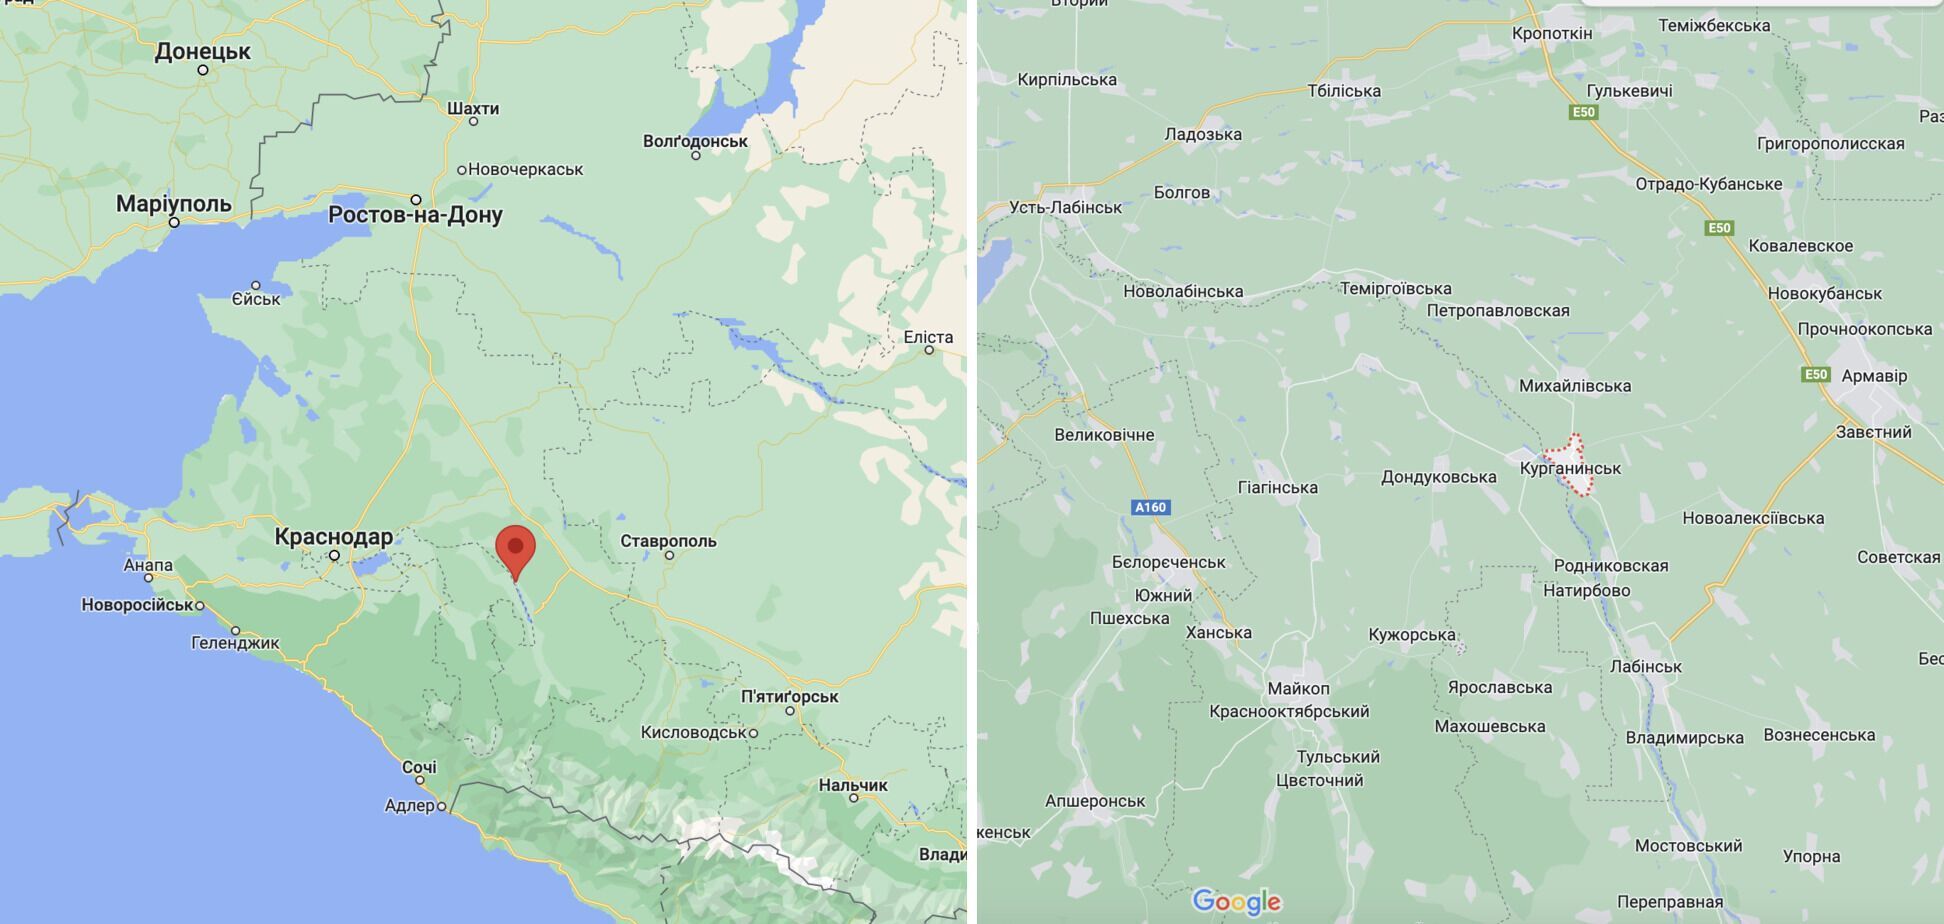 В Краснодарском крае горит воинская часть: первые подробности. Фото и видео